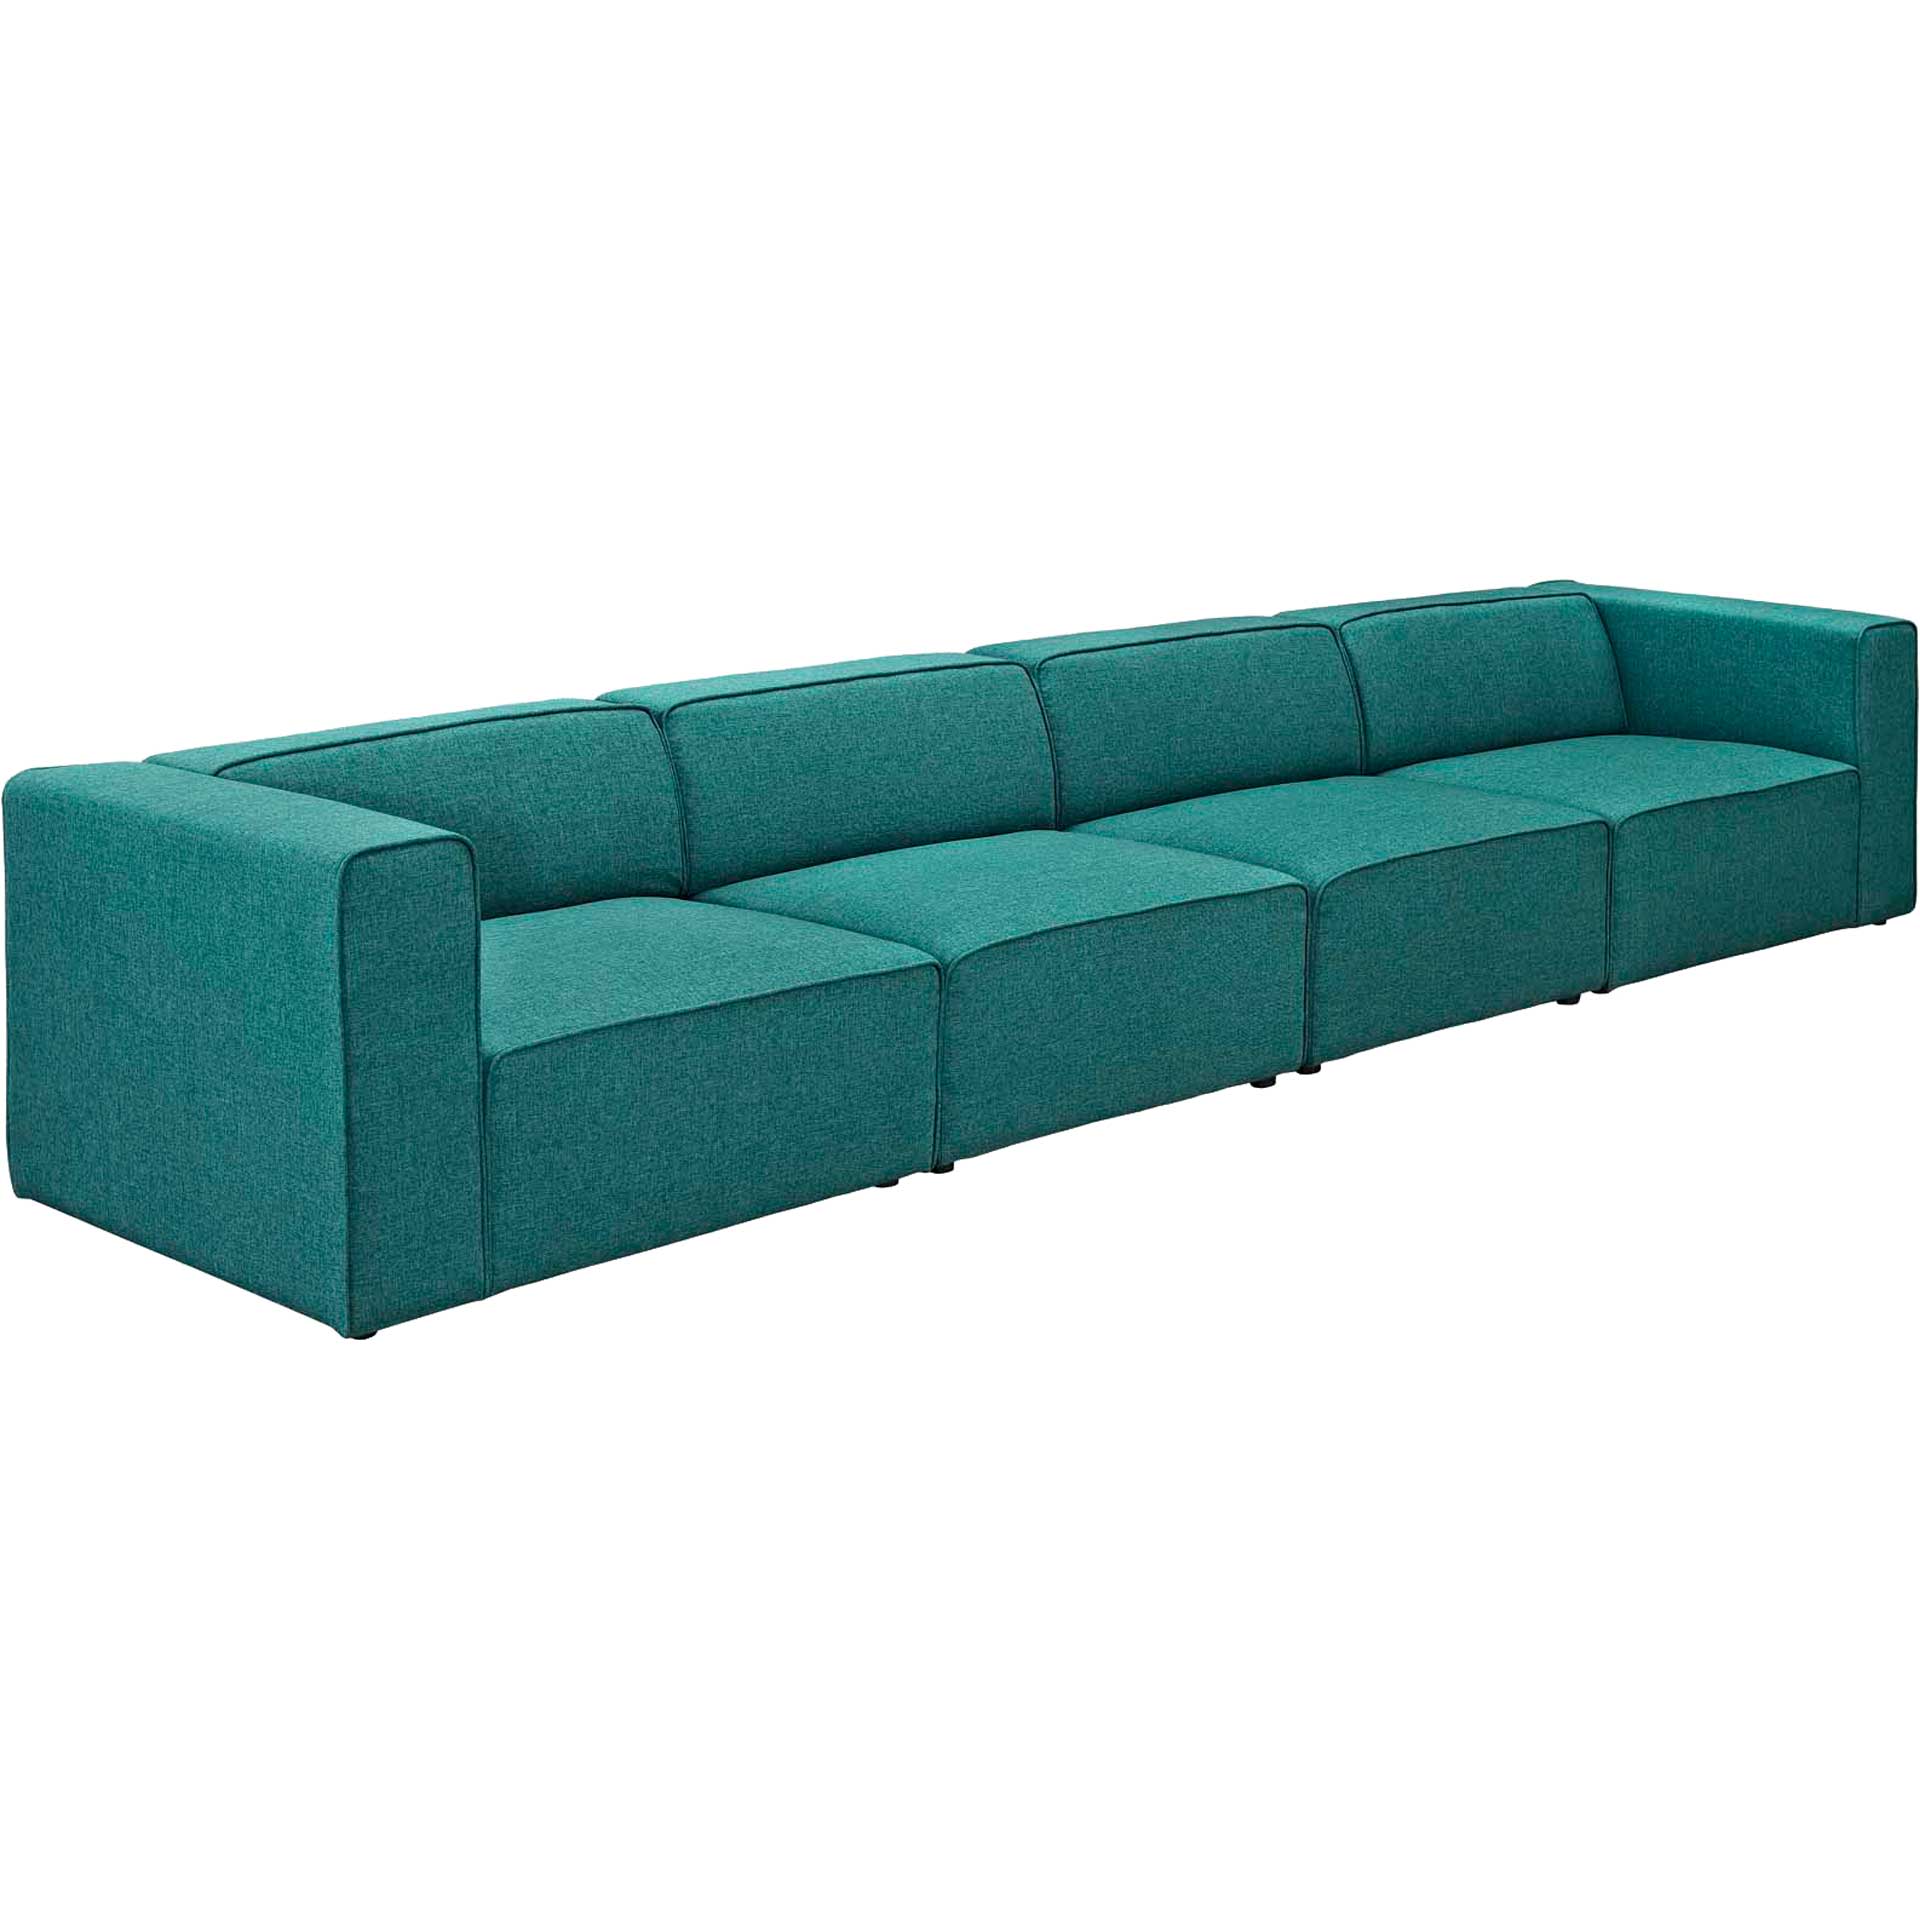 Maisie Fabric Modular Sofa Teal